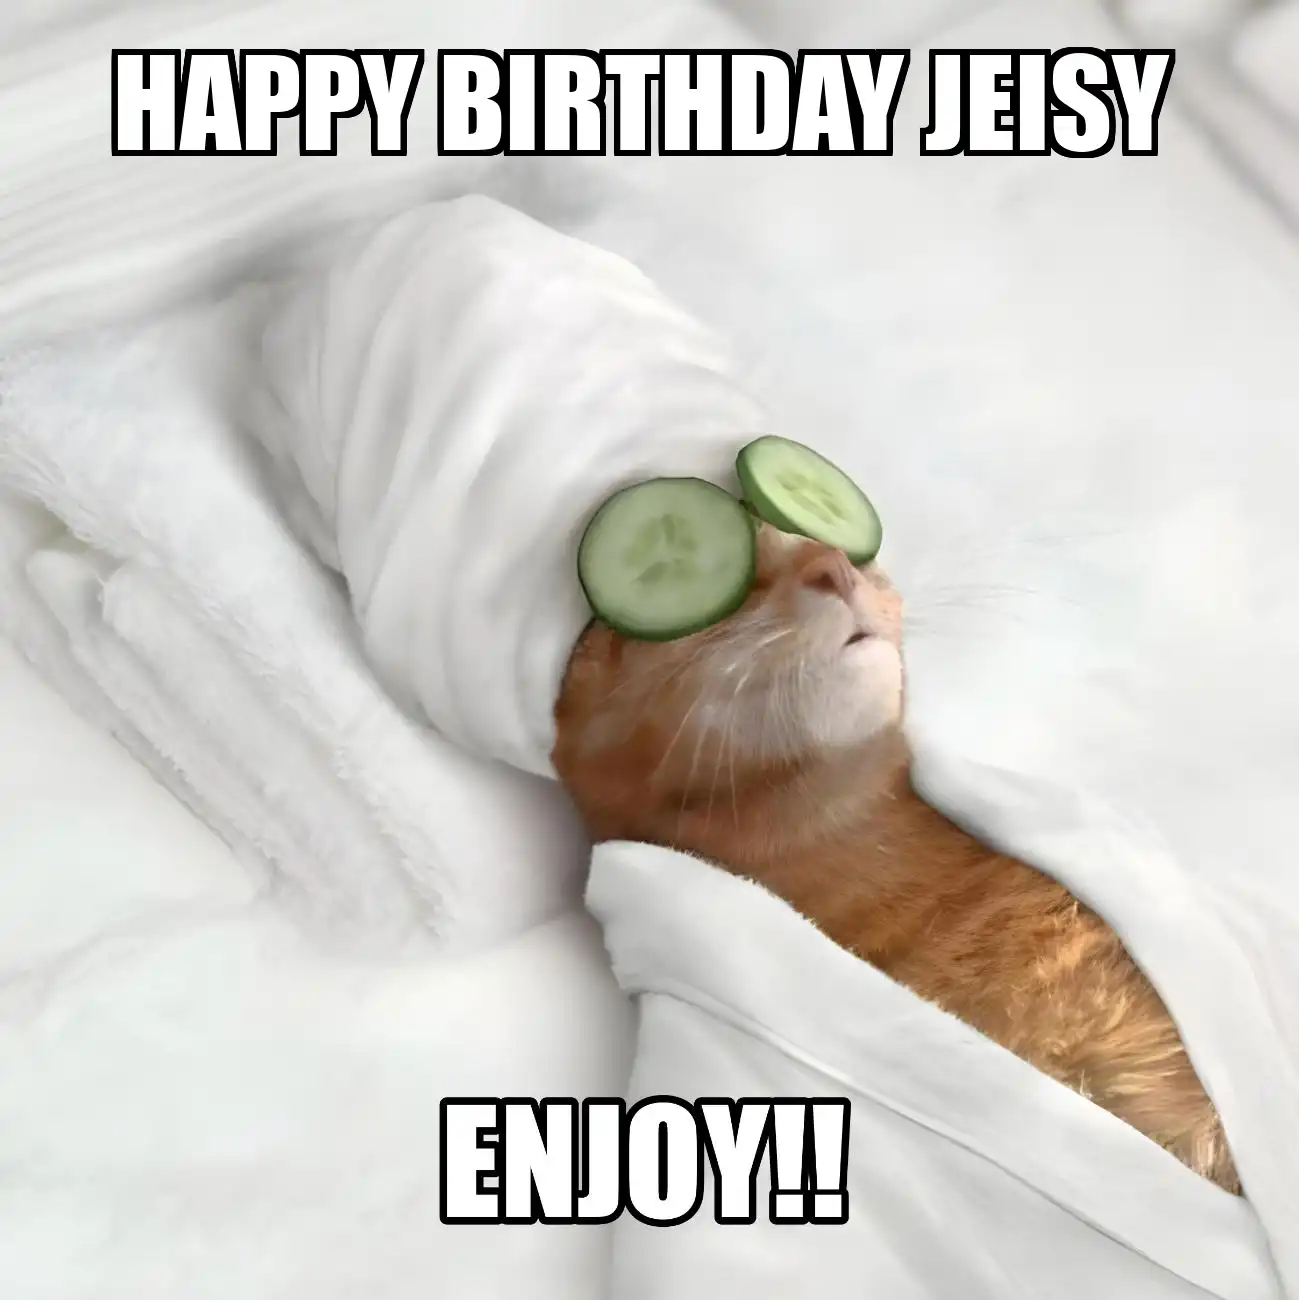 Happy Birthday Jeisy Enjoy Cat Meme